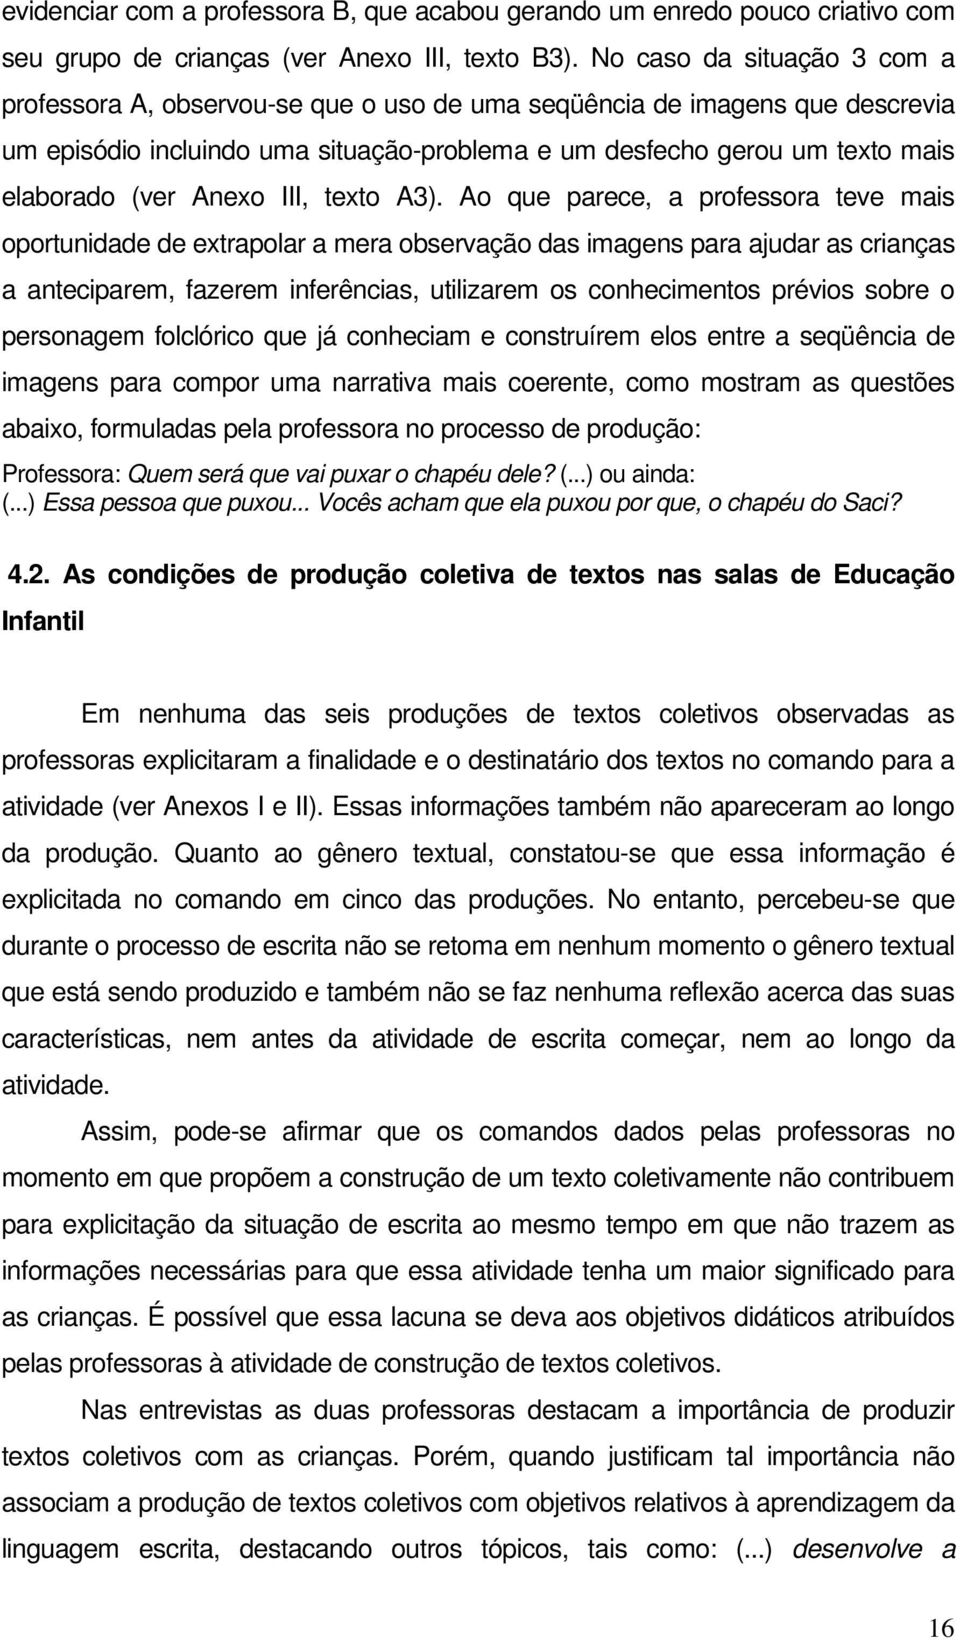 Anexo III, texto A3).